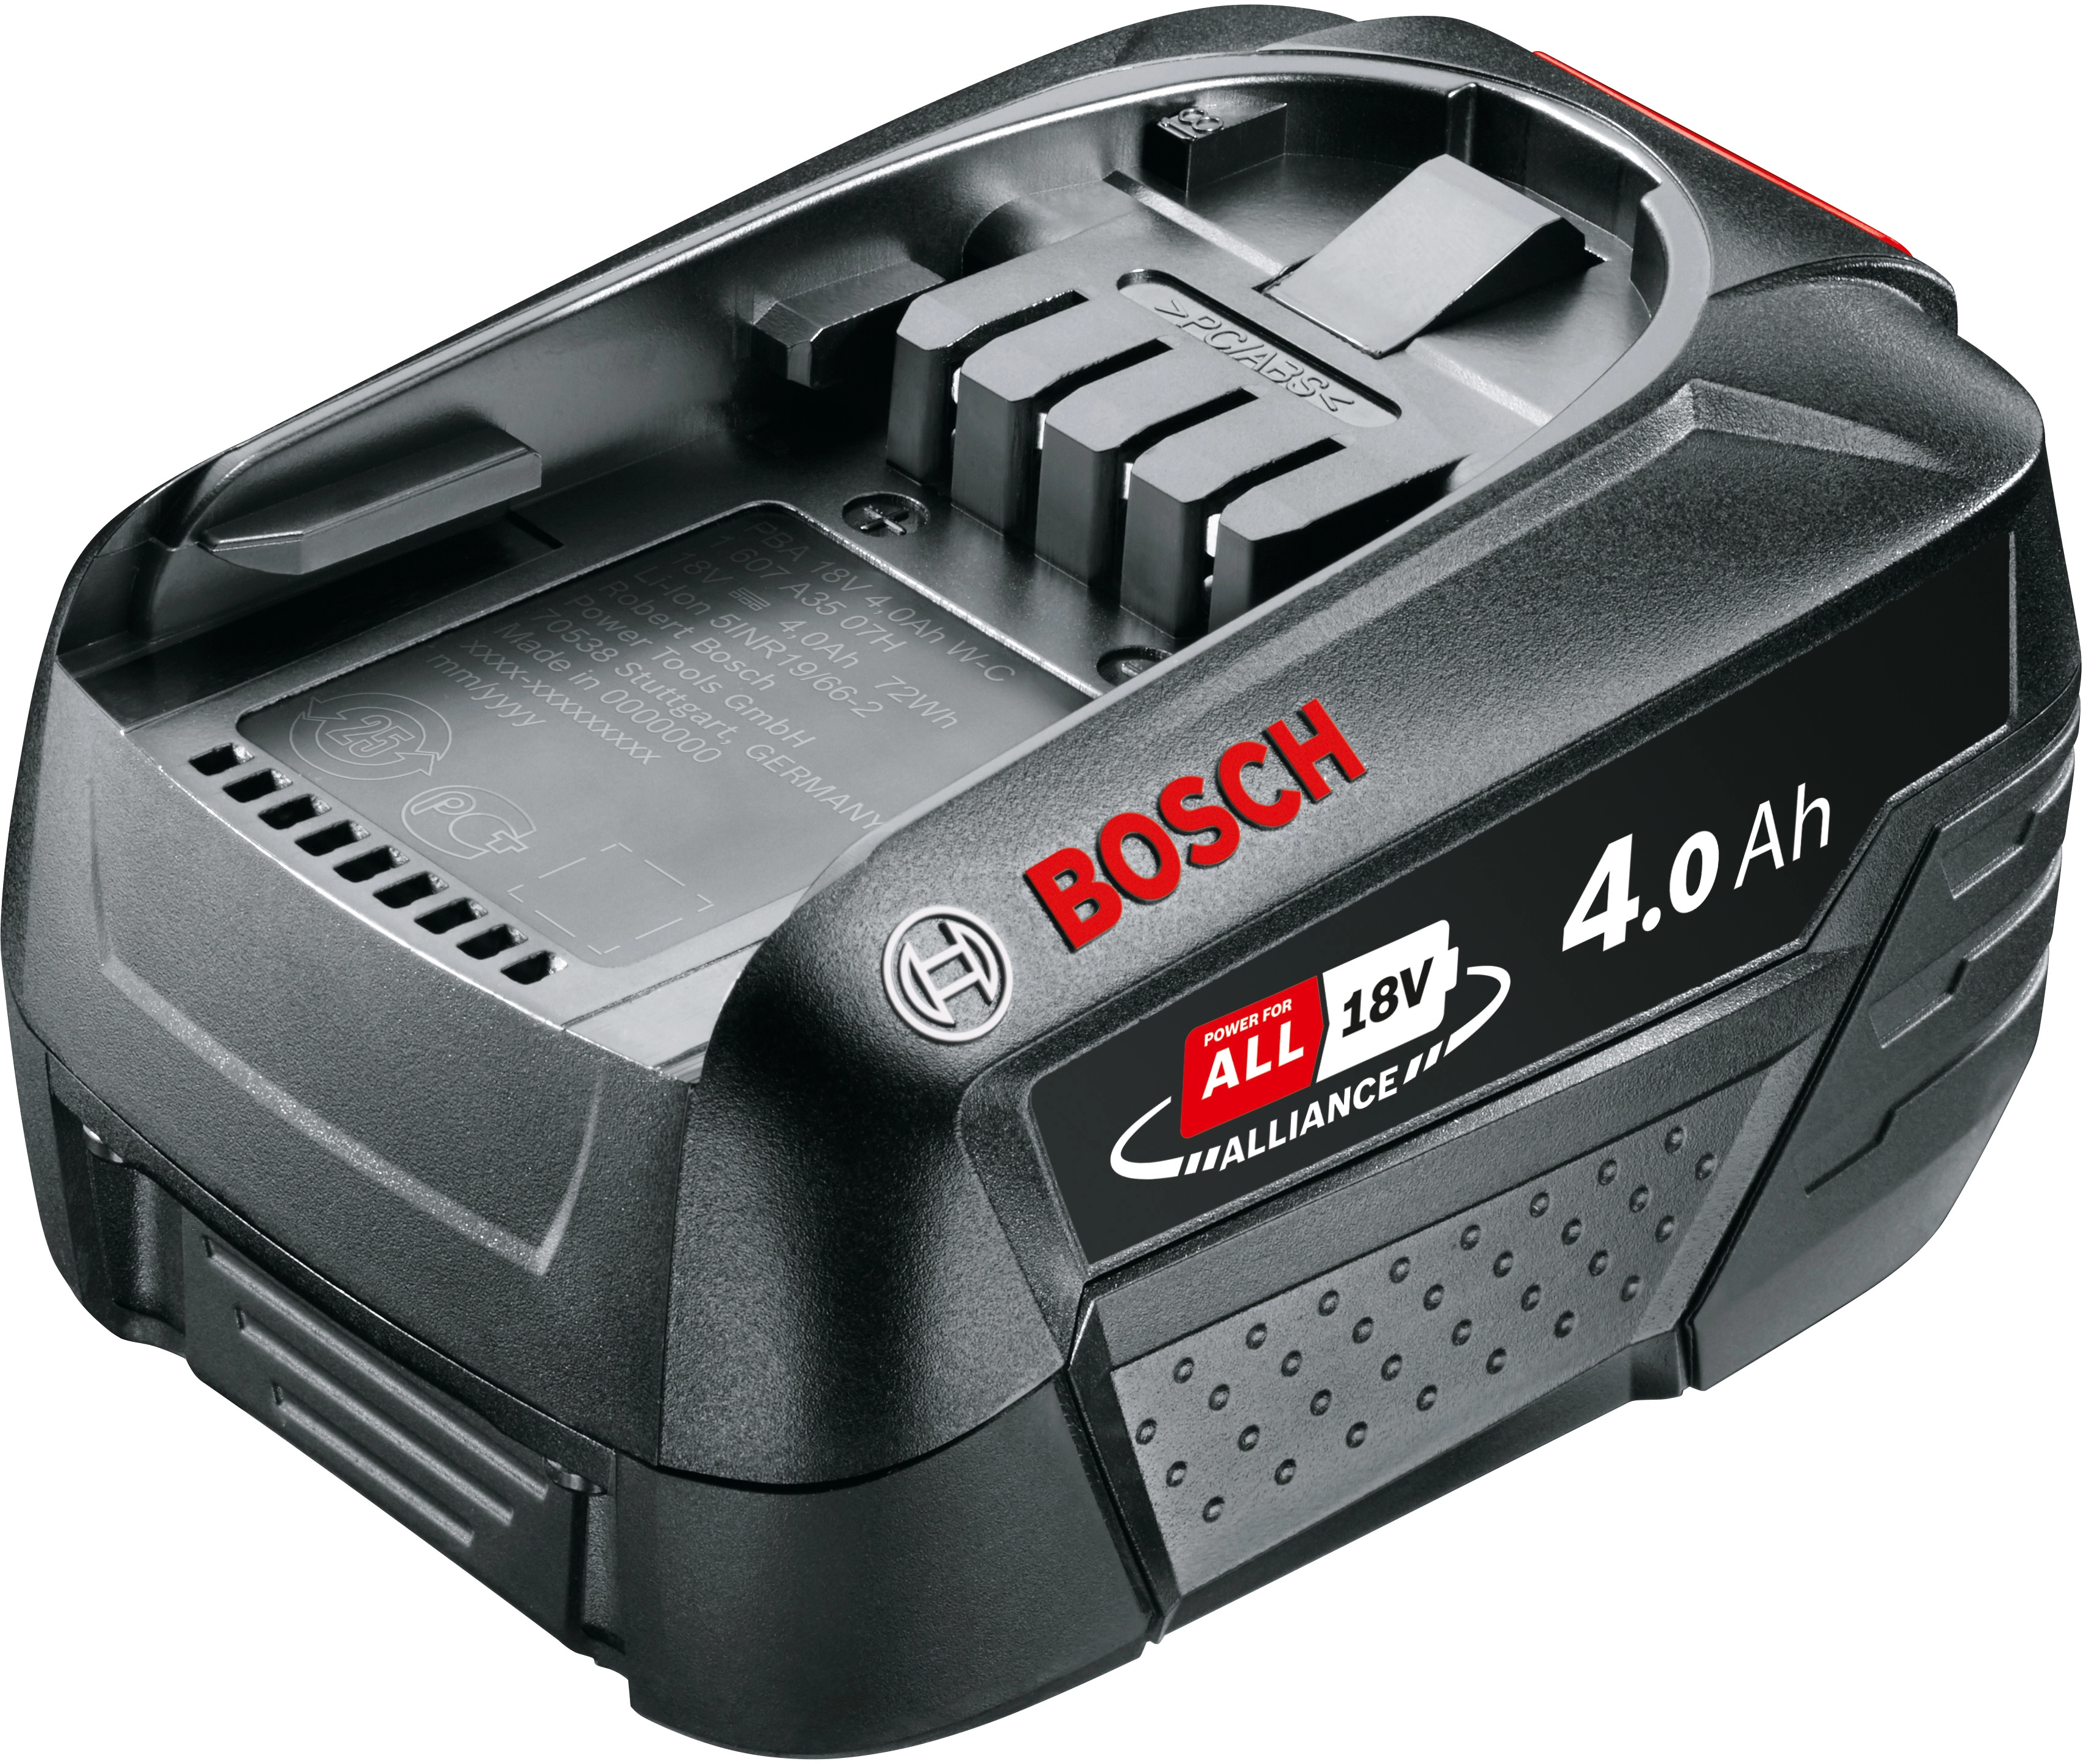 Jetzt gratis 18V Bosch Akku mit  sichern